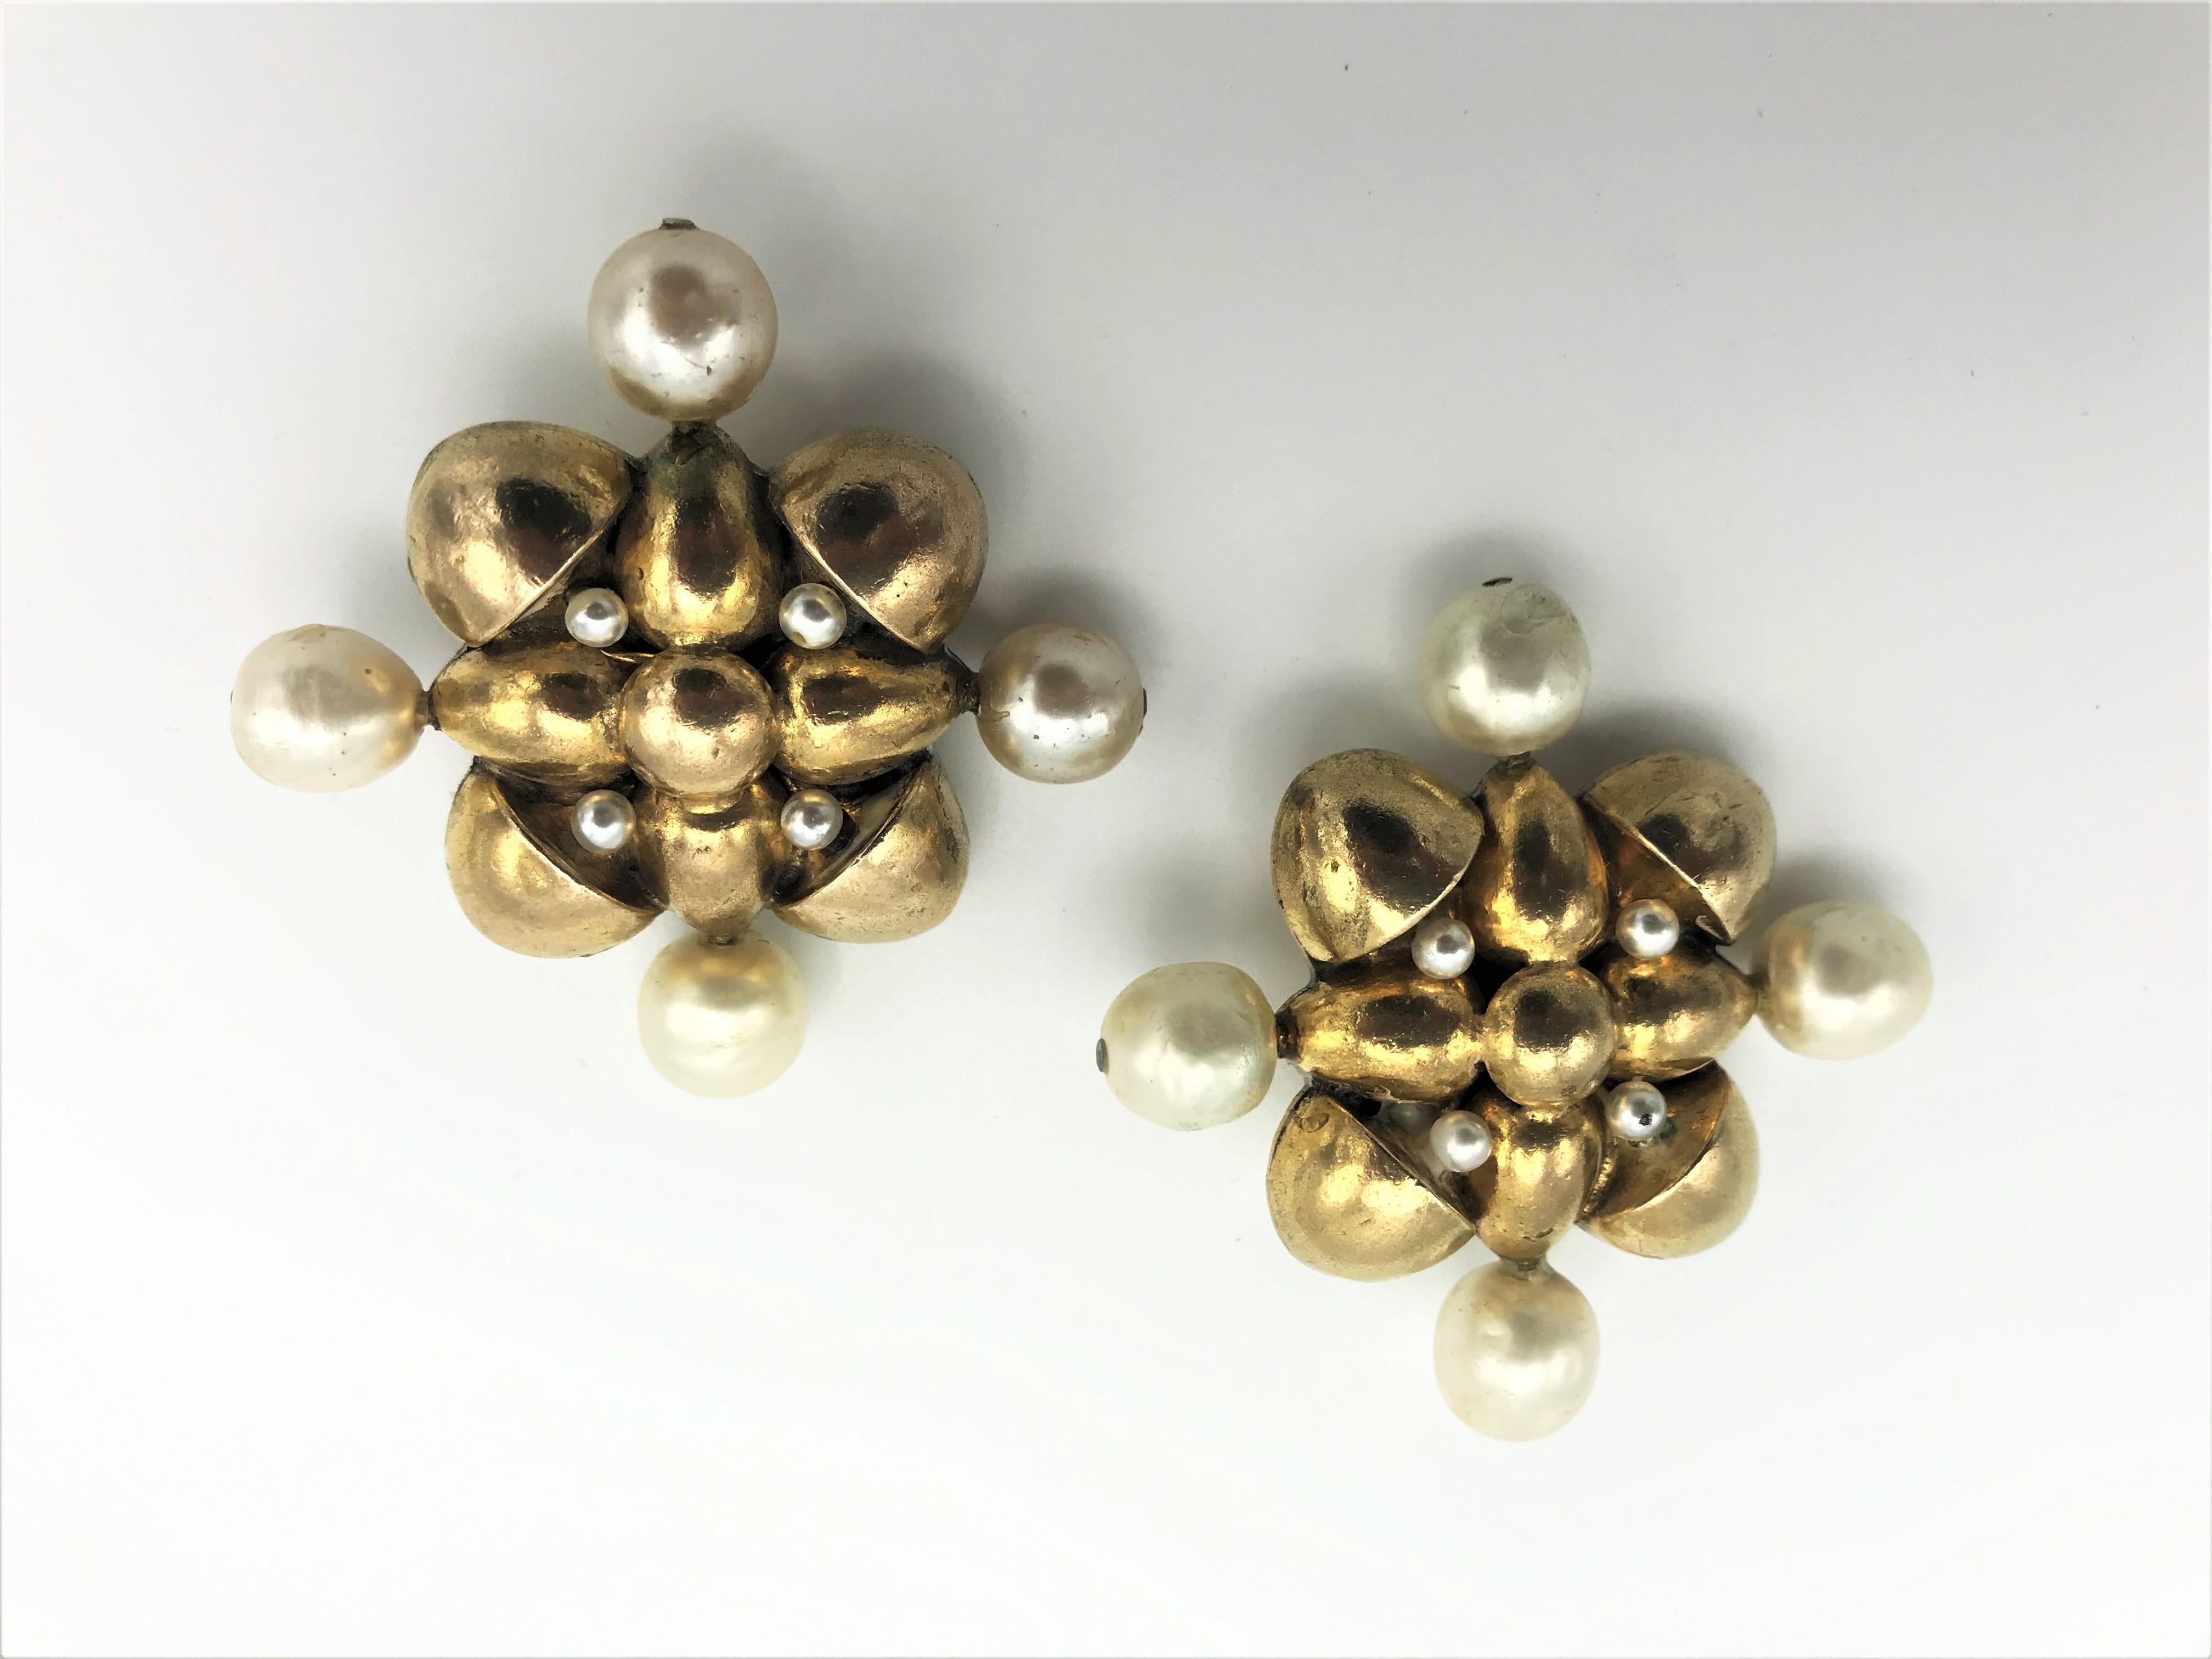 Sehr frühe Ohrclips von Chanel aus den 70/80er Jahren in Form eines Kreuzes, flankiert von 4 falschen Barockperlen.
Maße: 4 Kunstperlen 1 cm Durchmesser, Breite mit Perlen 5 x 5 cm, Breite des Goldteils 3,2 x 3,2 cm. Guter Zustand  